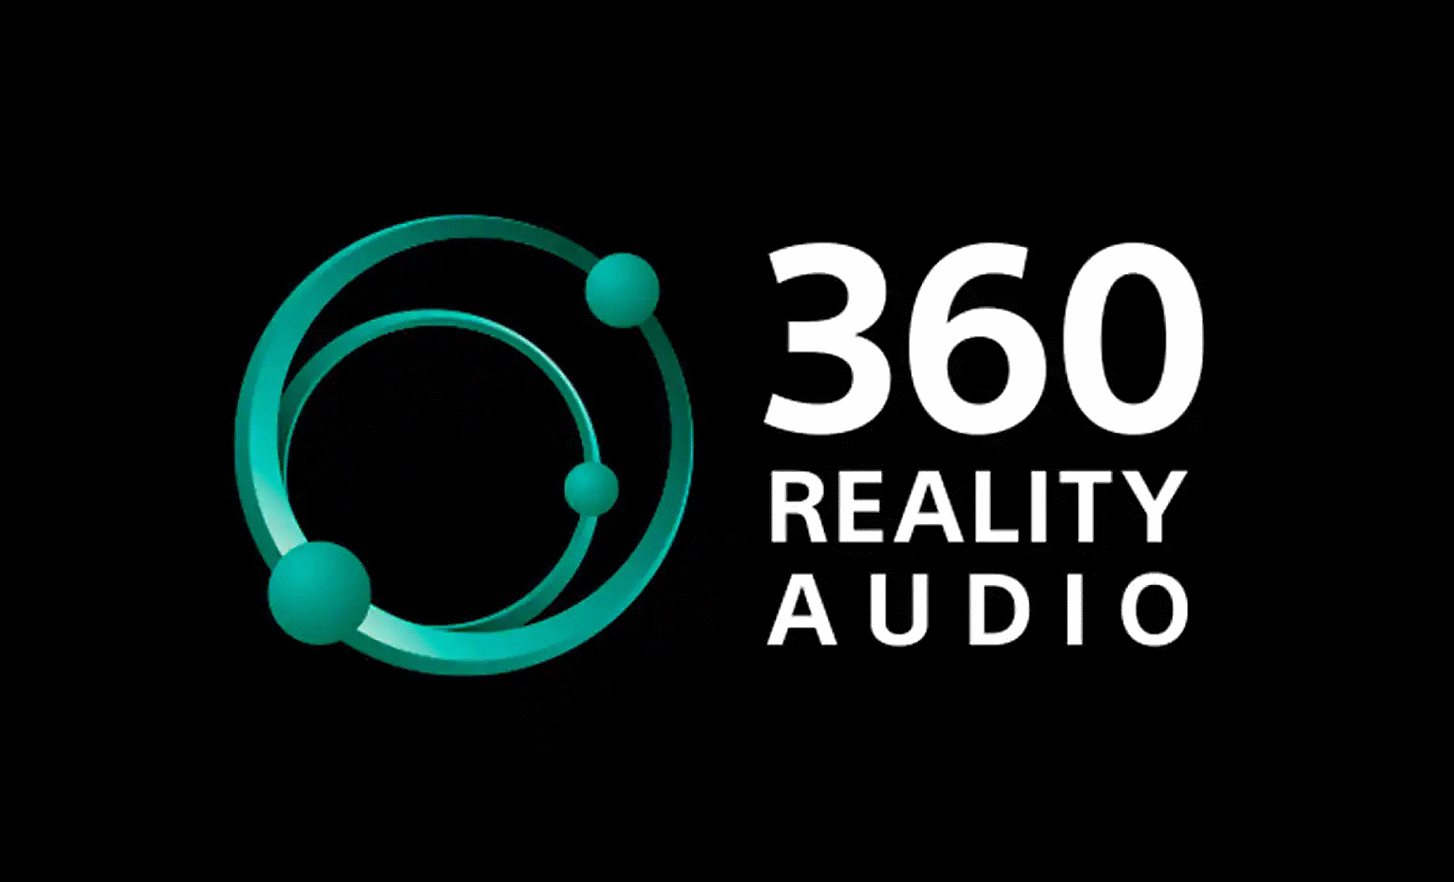 360 Reality Audio logo on black background